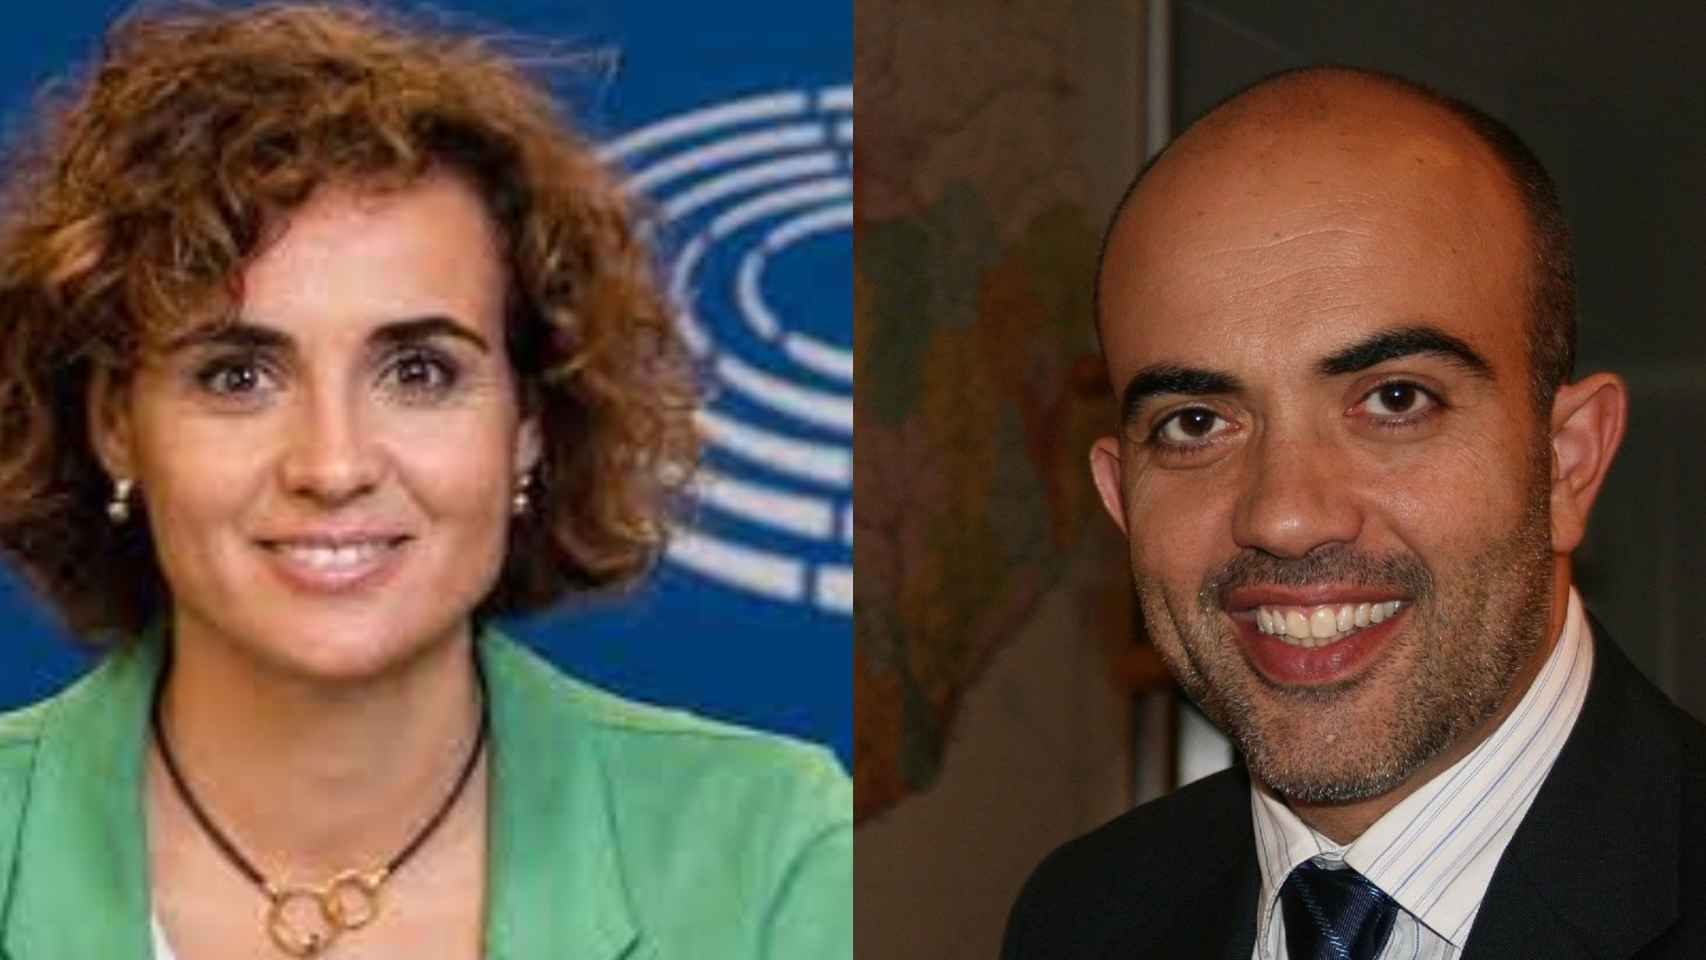 Dolors Montserrat y Daniel Sirera, dos de los candidatos propuestos para la alcaldía en Barcelona